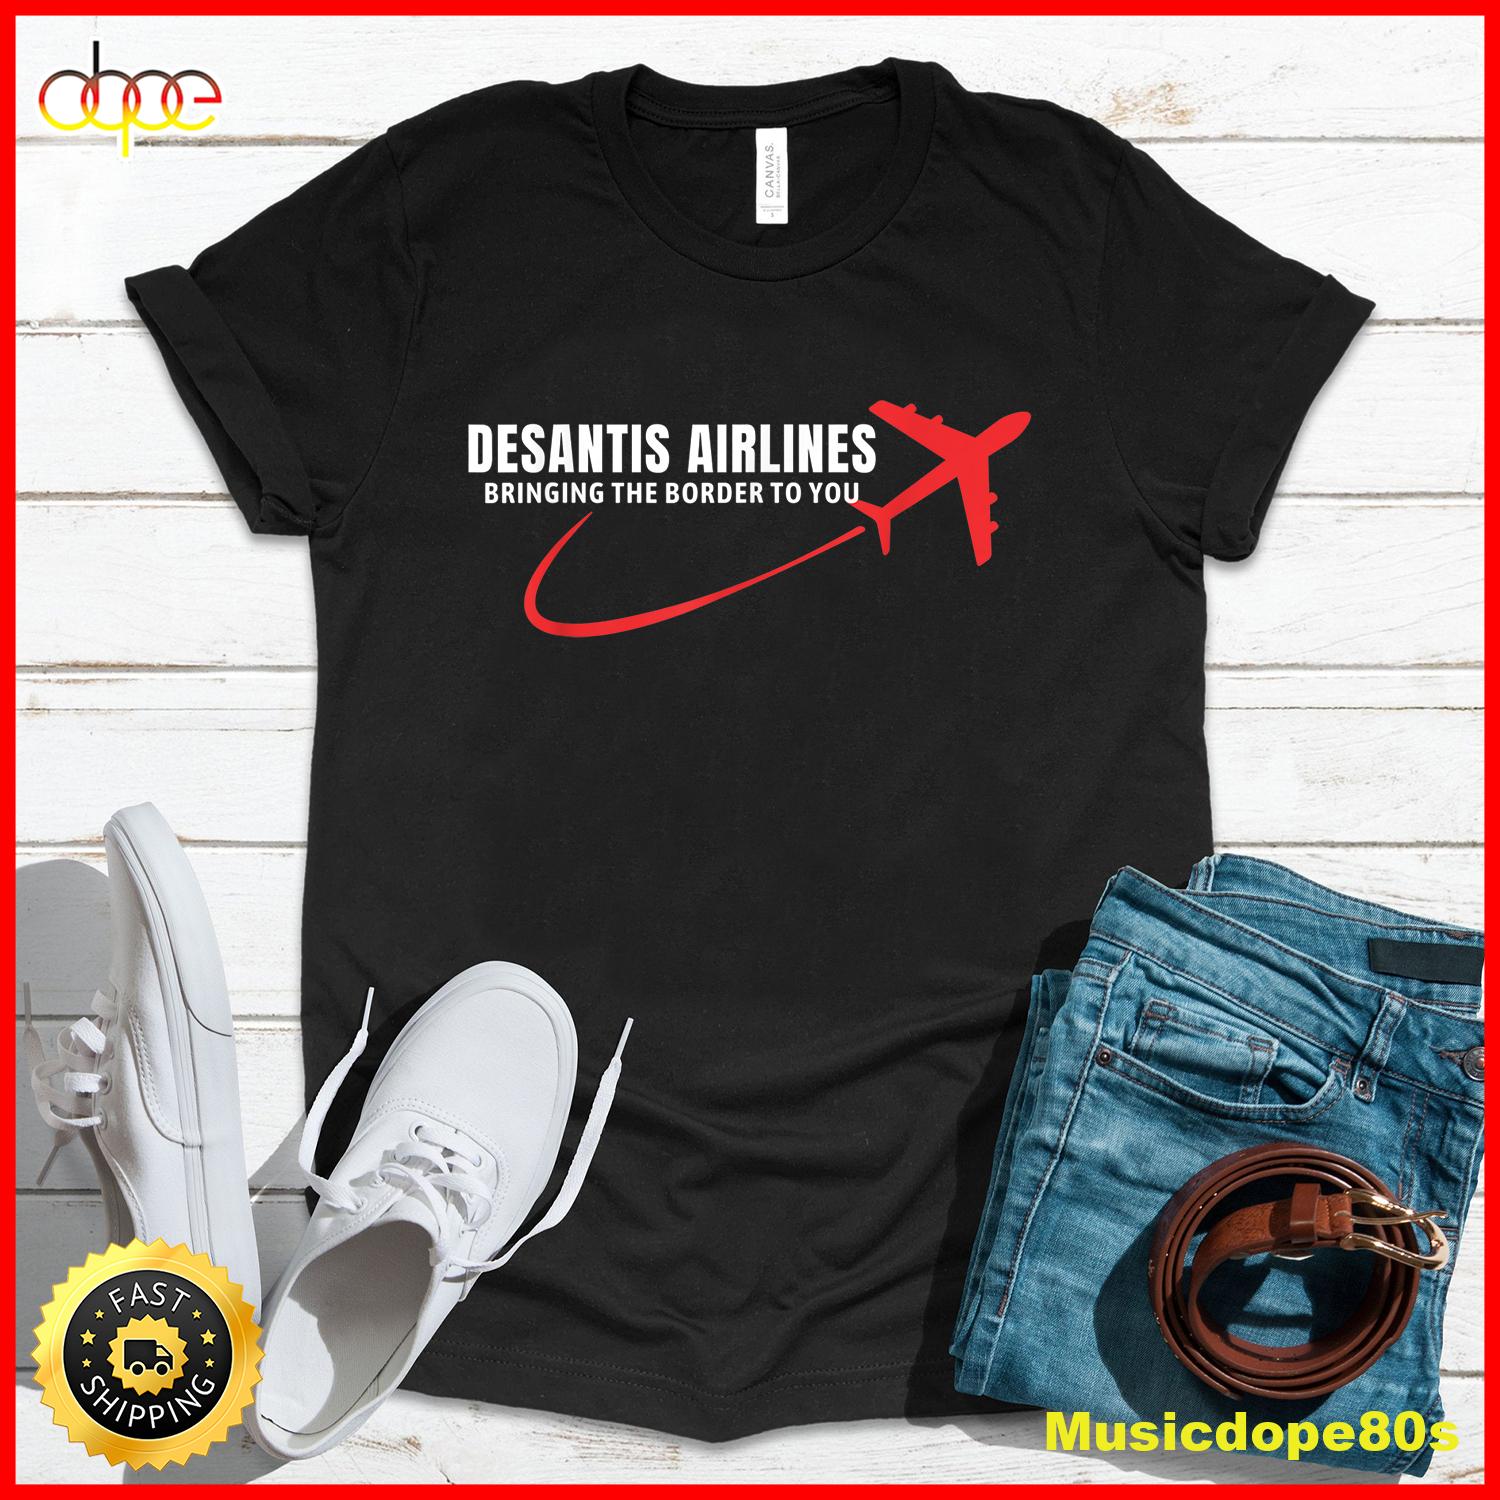 Desantis Airlines T Shirt